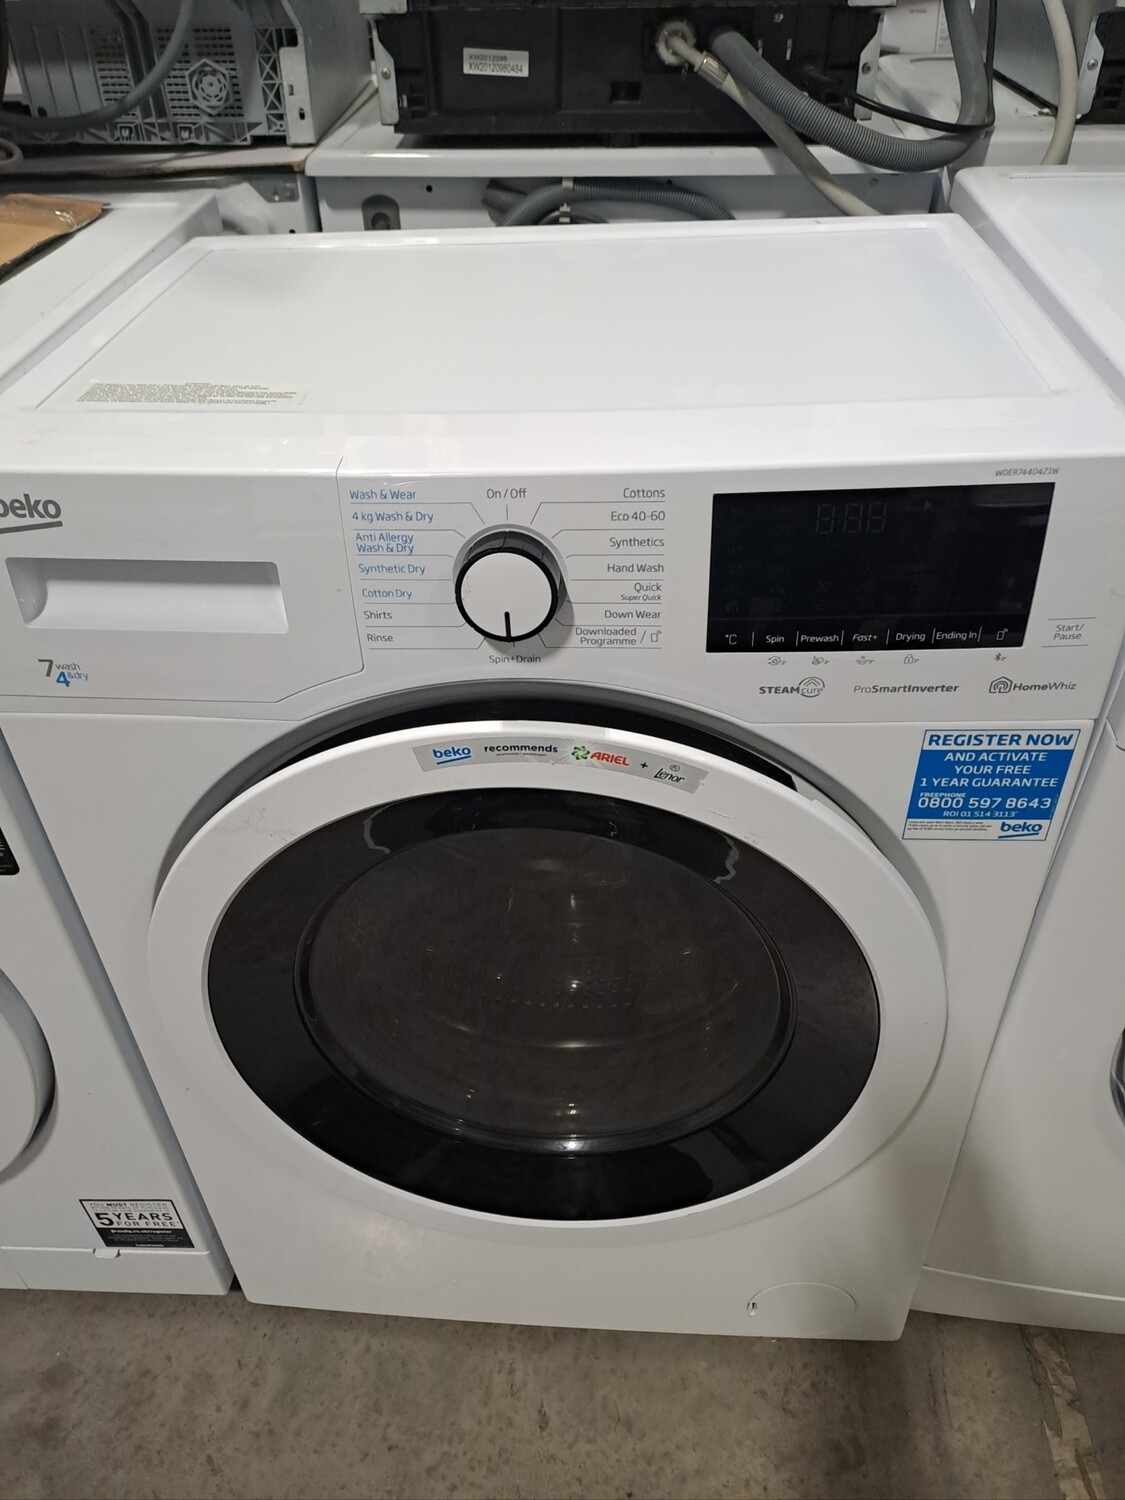 Beko WDER7440421W 7kg Load 1400 Spin Washing Machine Washer Dryer - White - Refurbished - 6 Month Guarantee